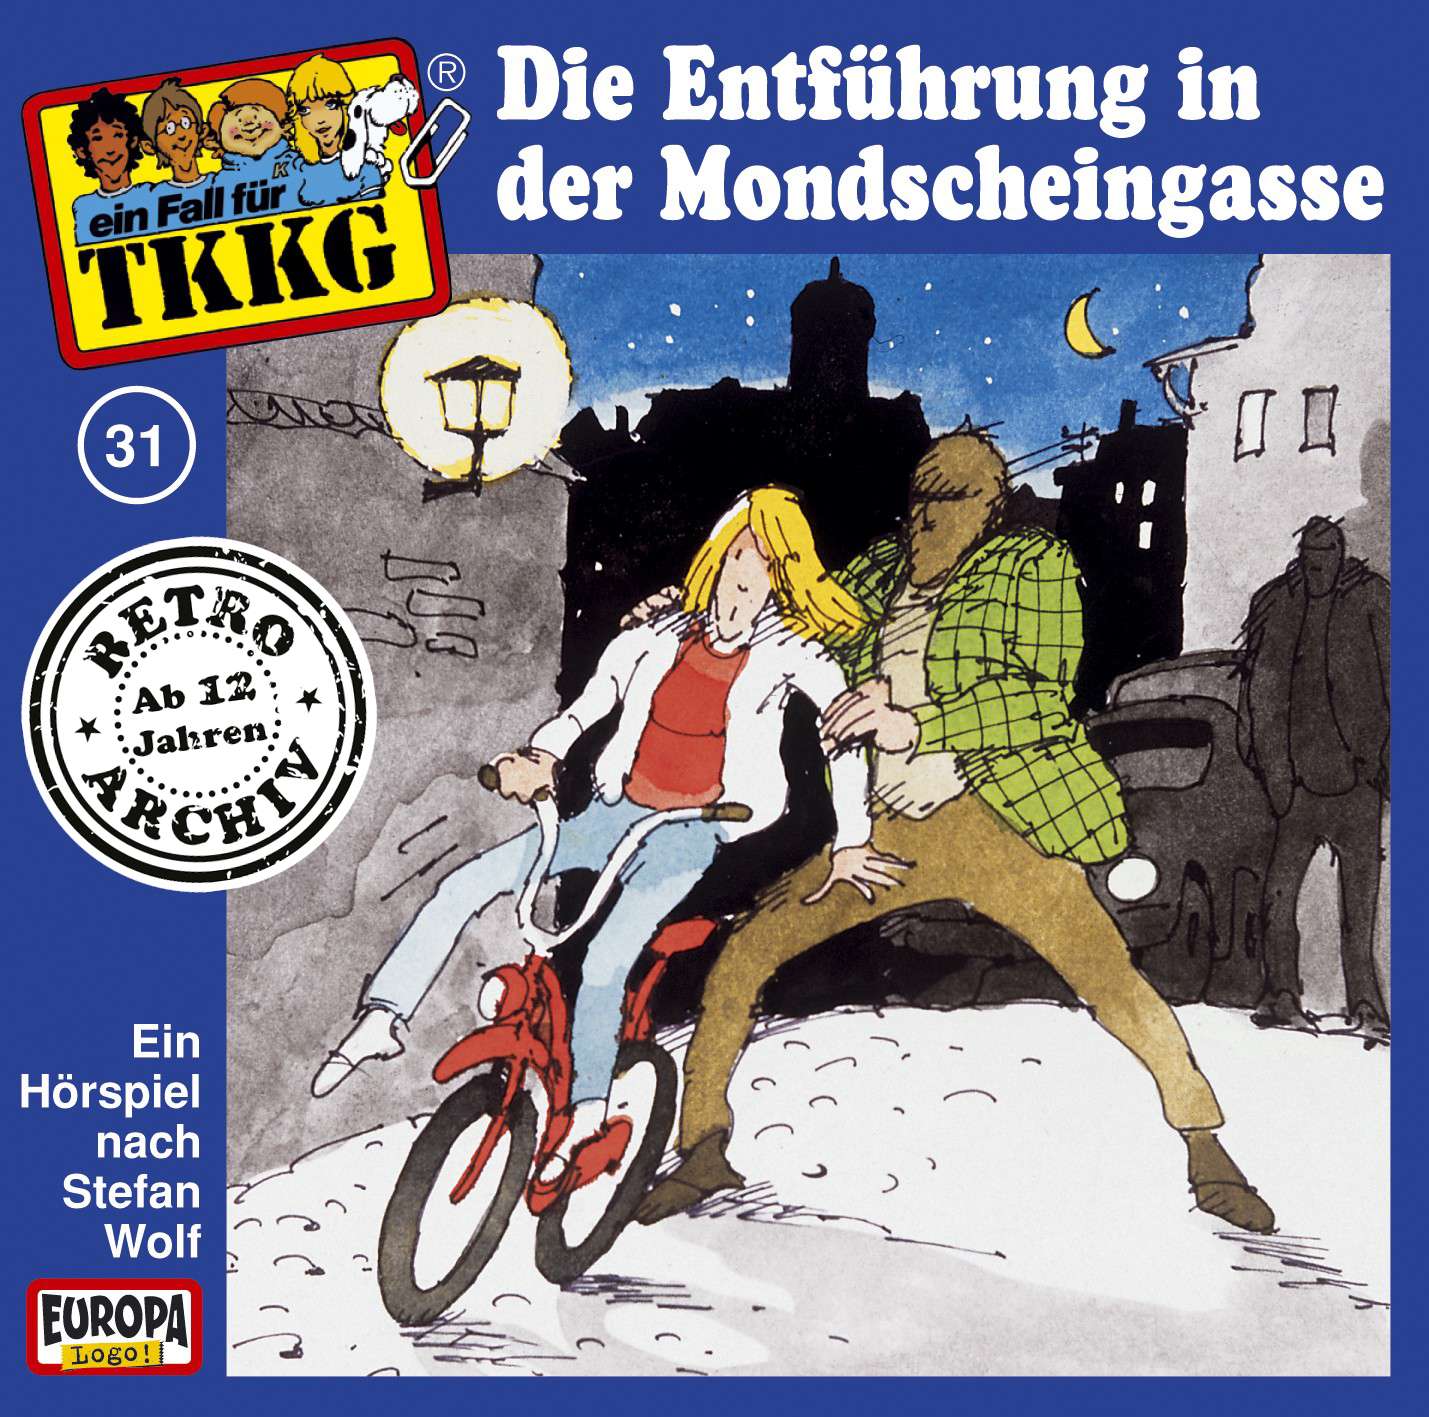 TKKG Retro-Archiv - Die Entführung in der Mondscheingasse